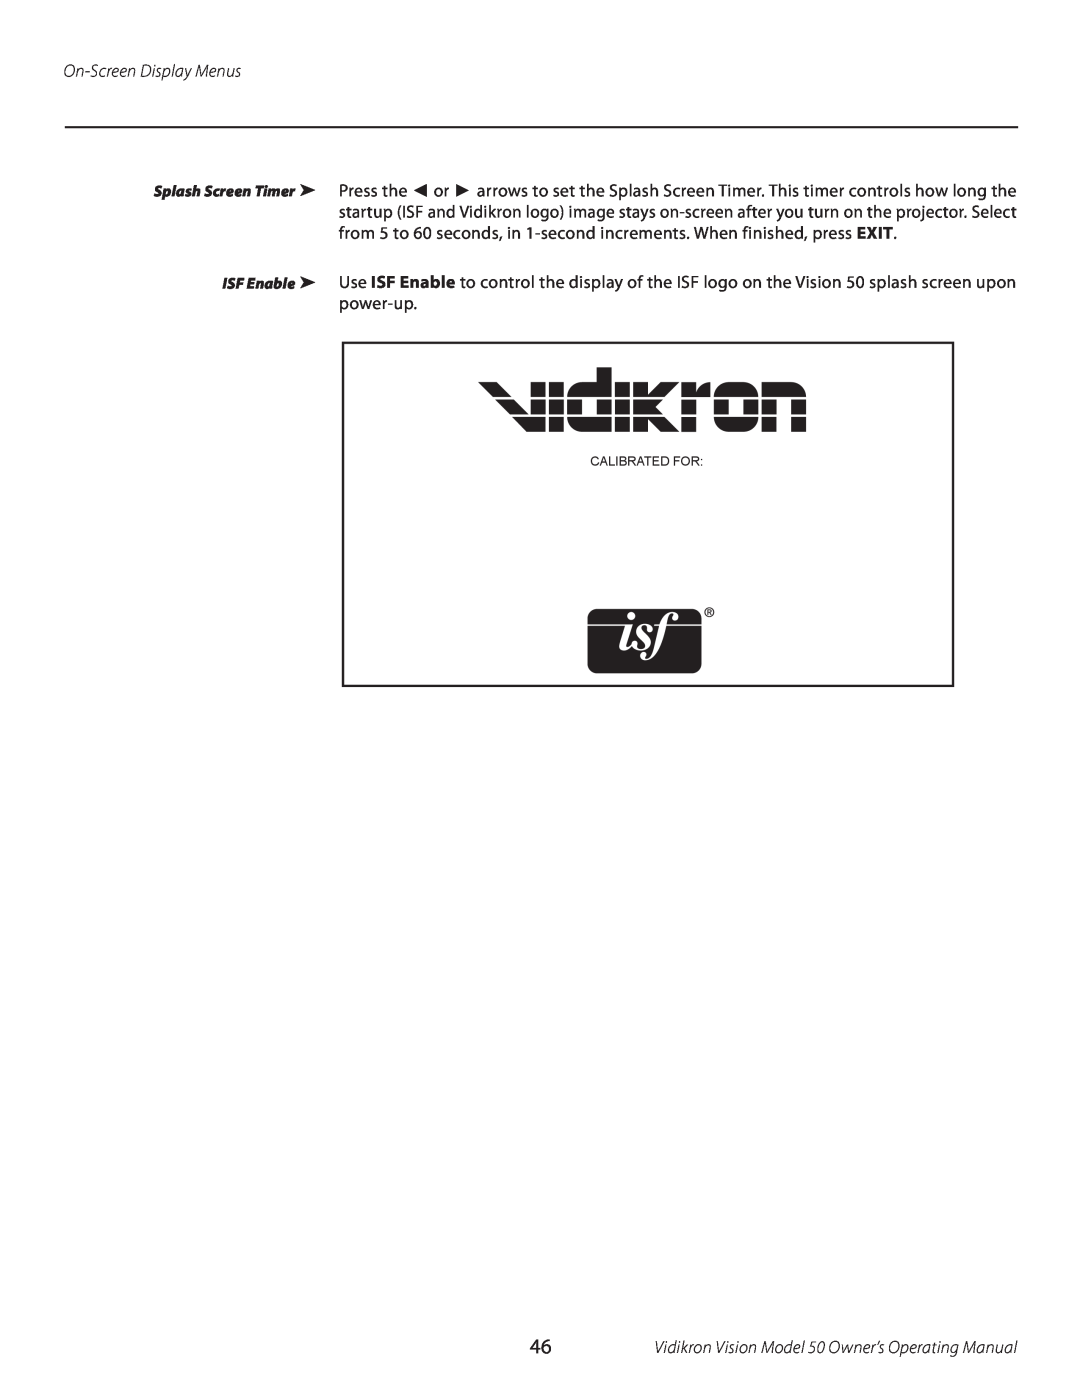 Vidikron 50 manual On-Screen Display Menus, Calibrated For 